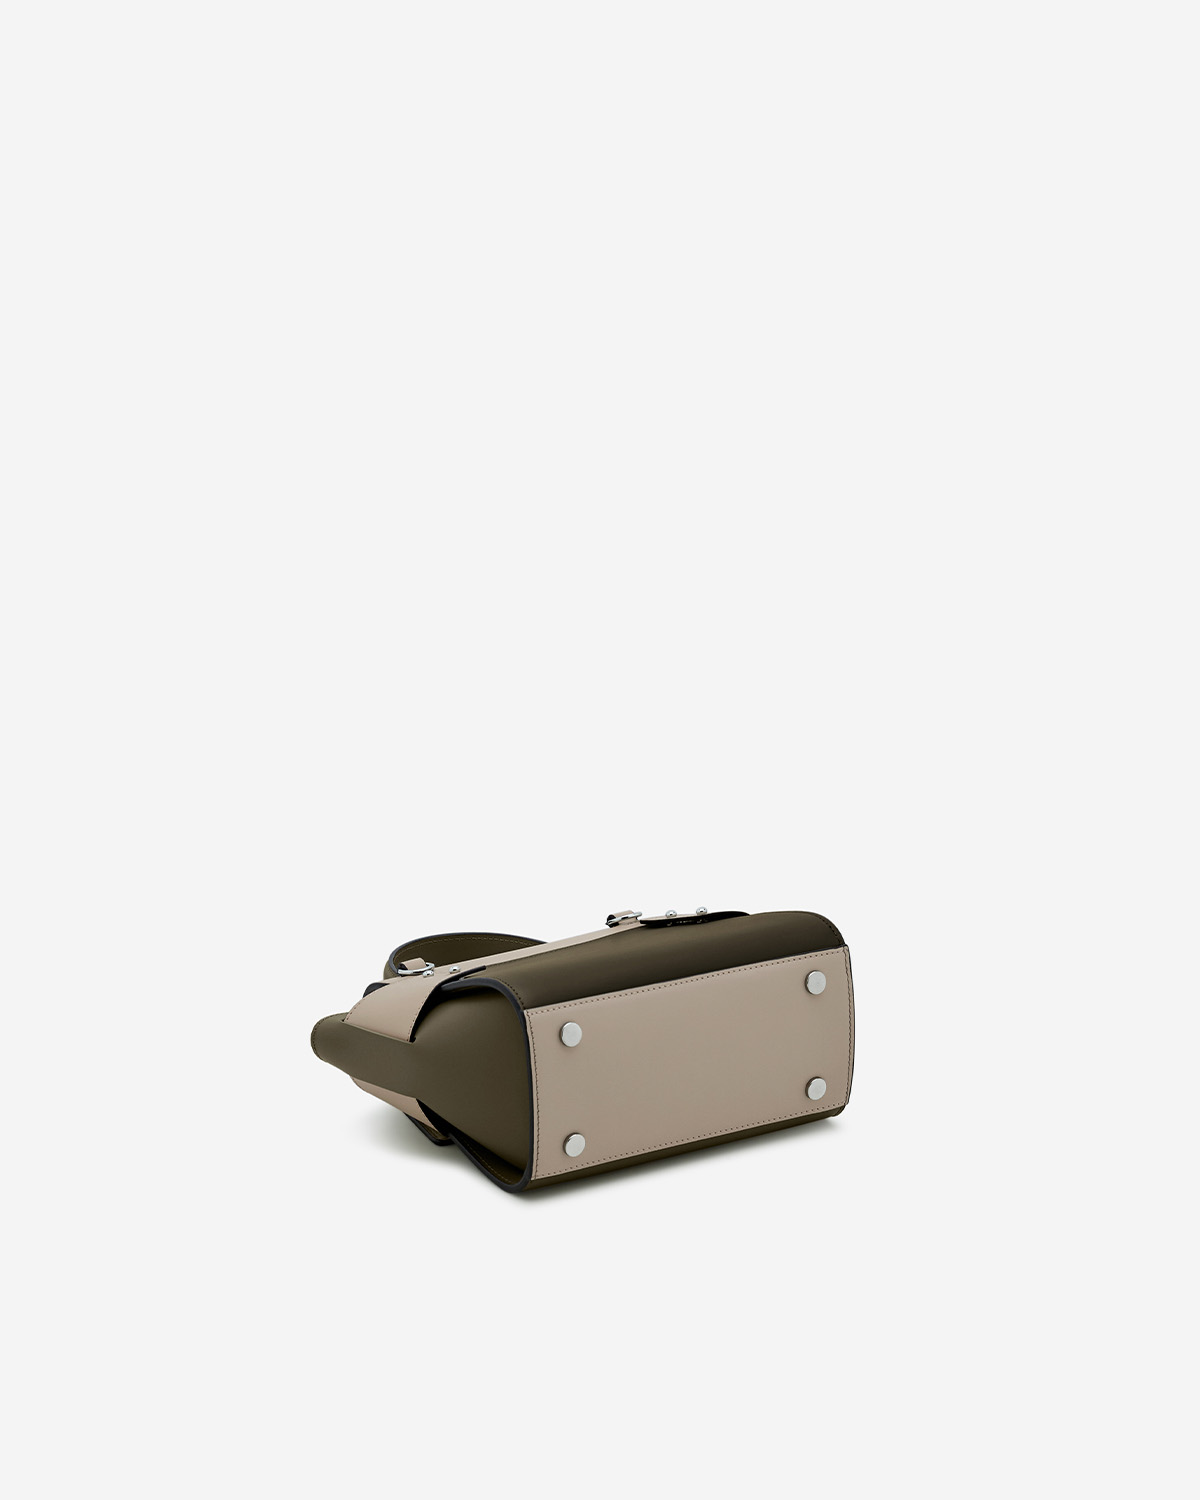 กระเป๋าถือหนังแท้ VERA Margo Leather Handbag, Size 20 สี Olive green